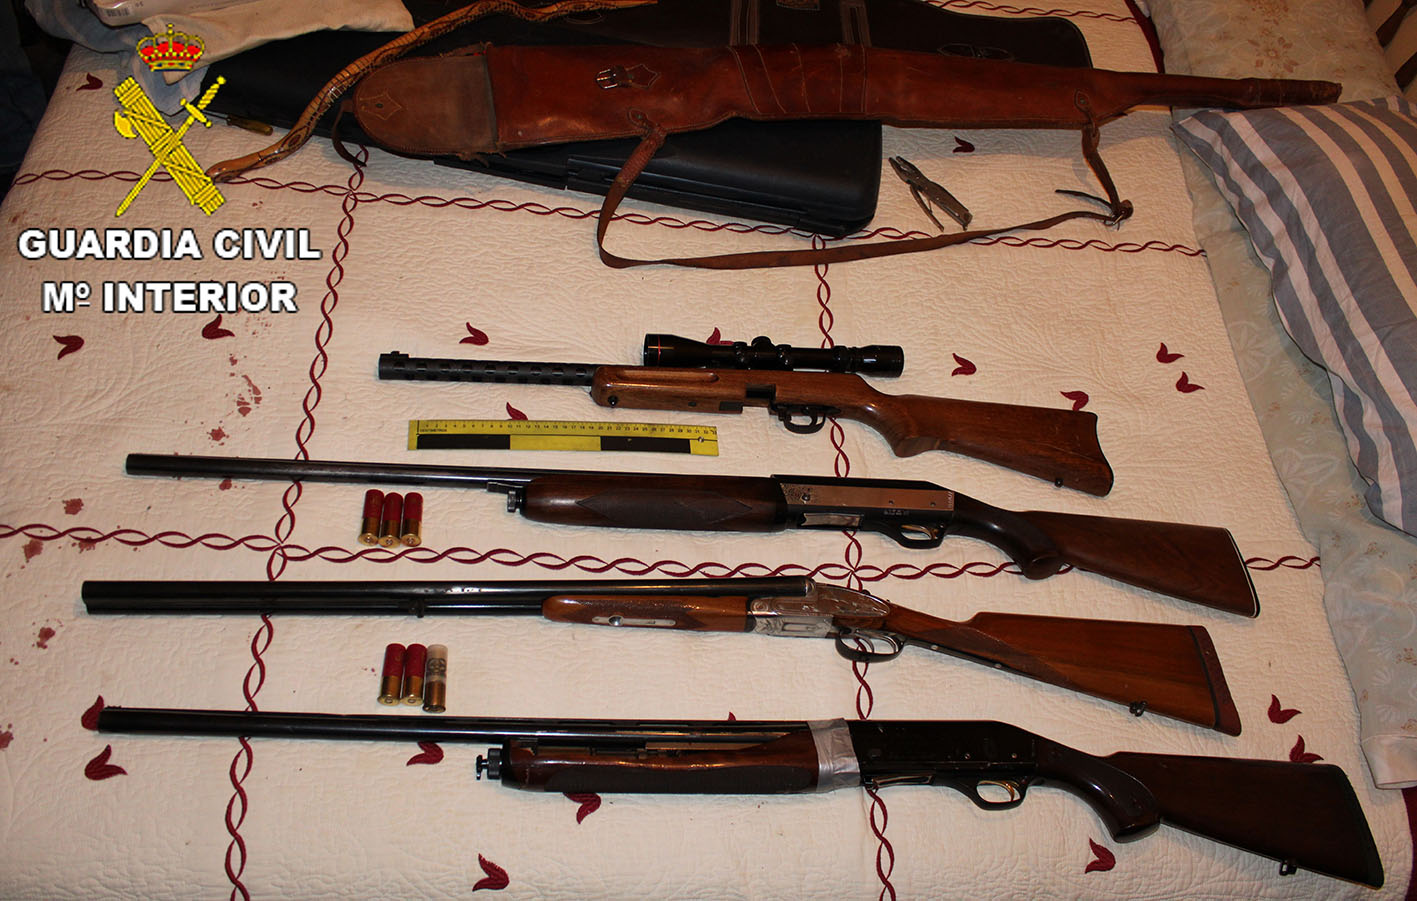 Las armas incautadas en los registros domiciliarios.